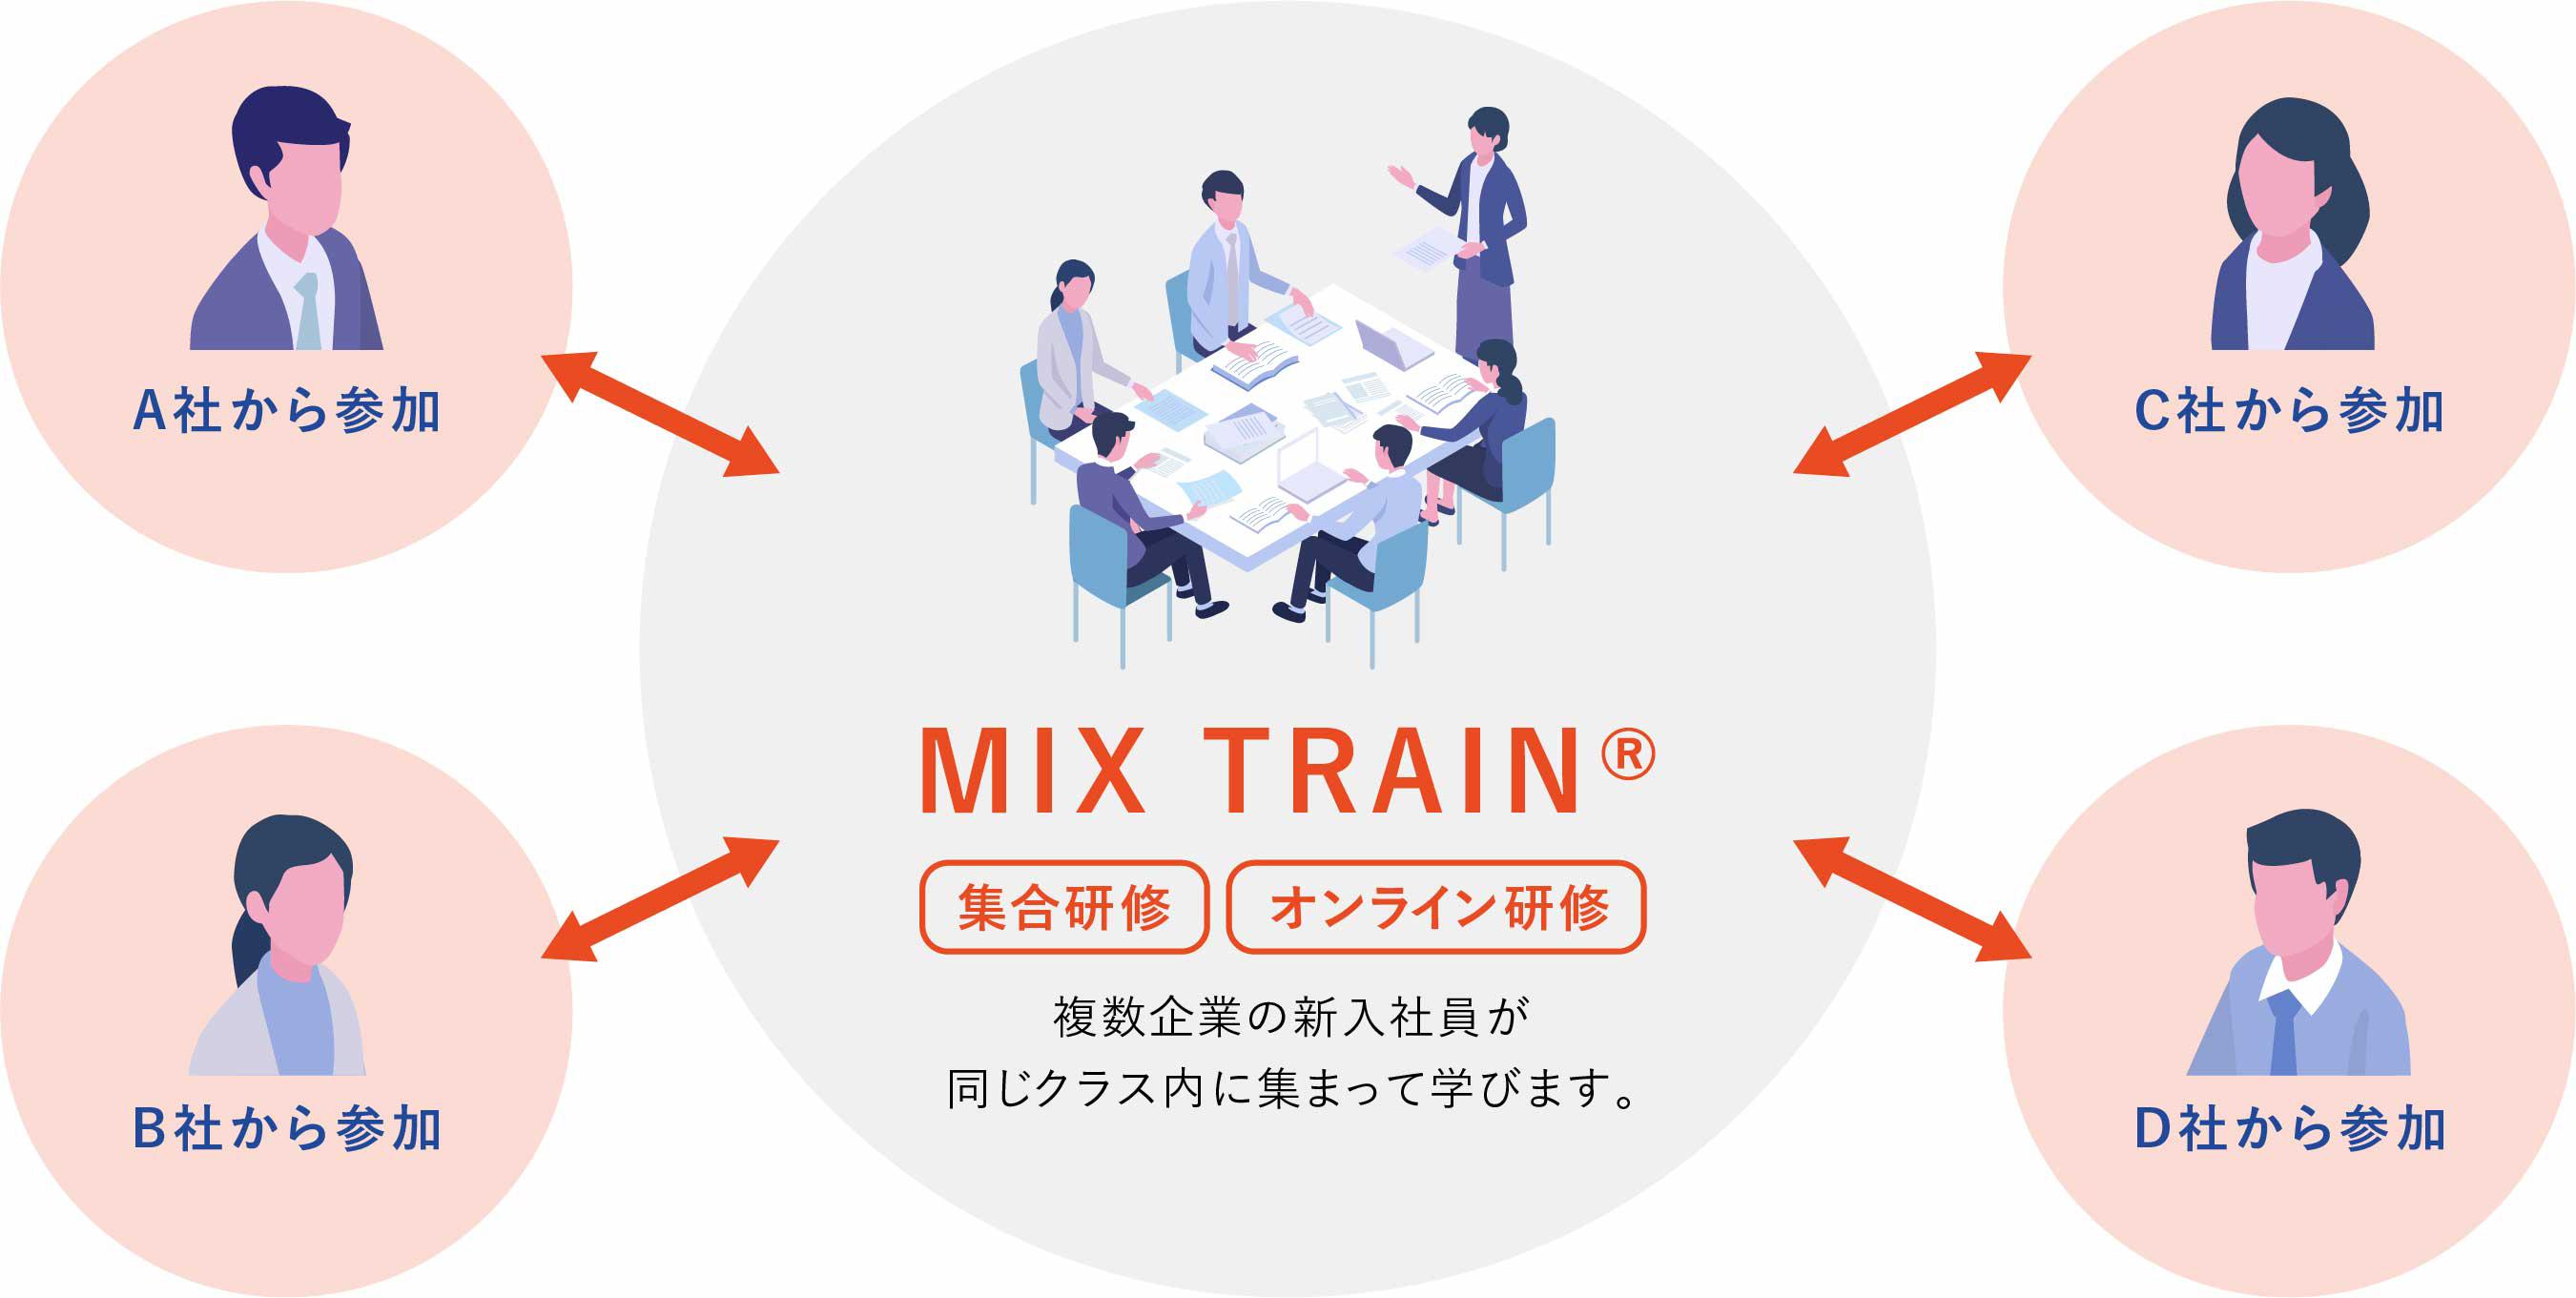 MIX TRAIN®の特徴